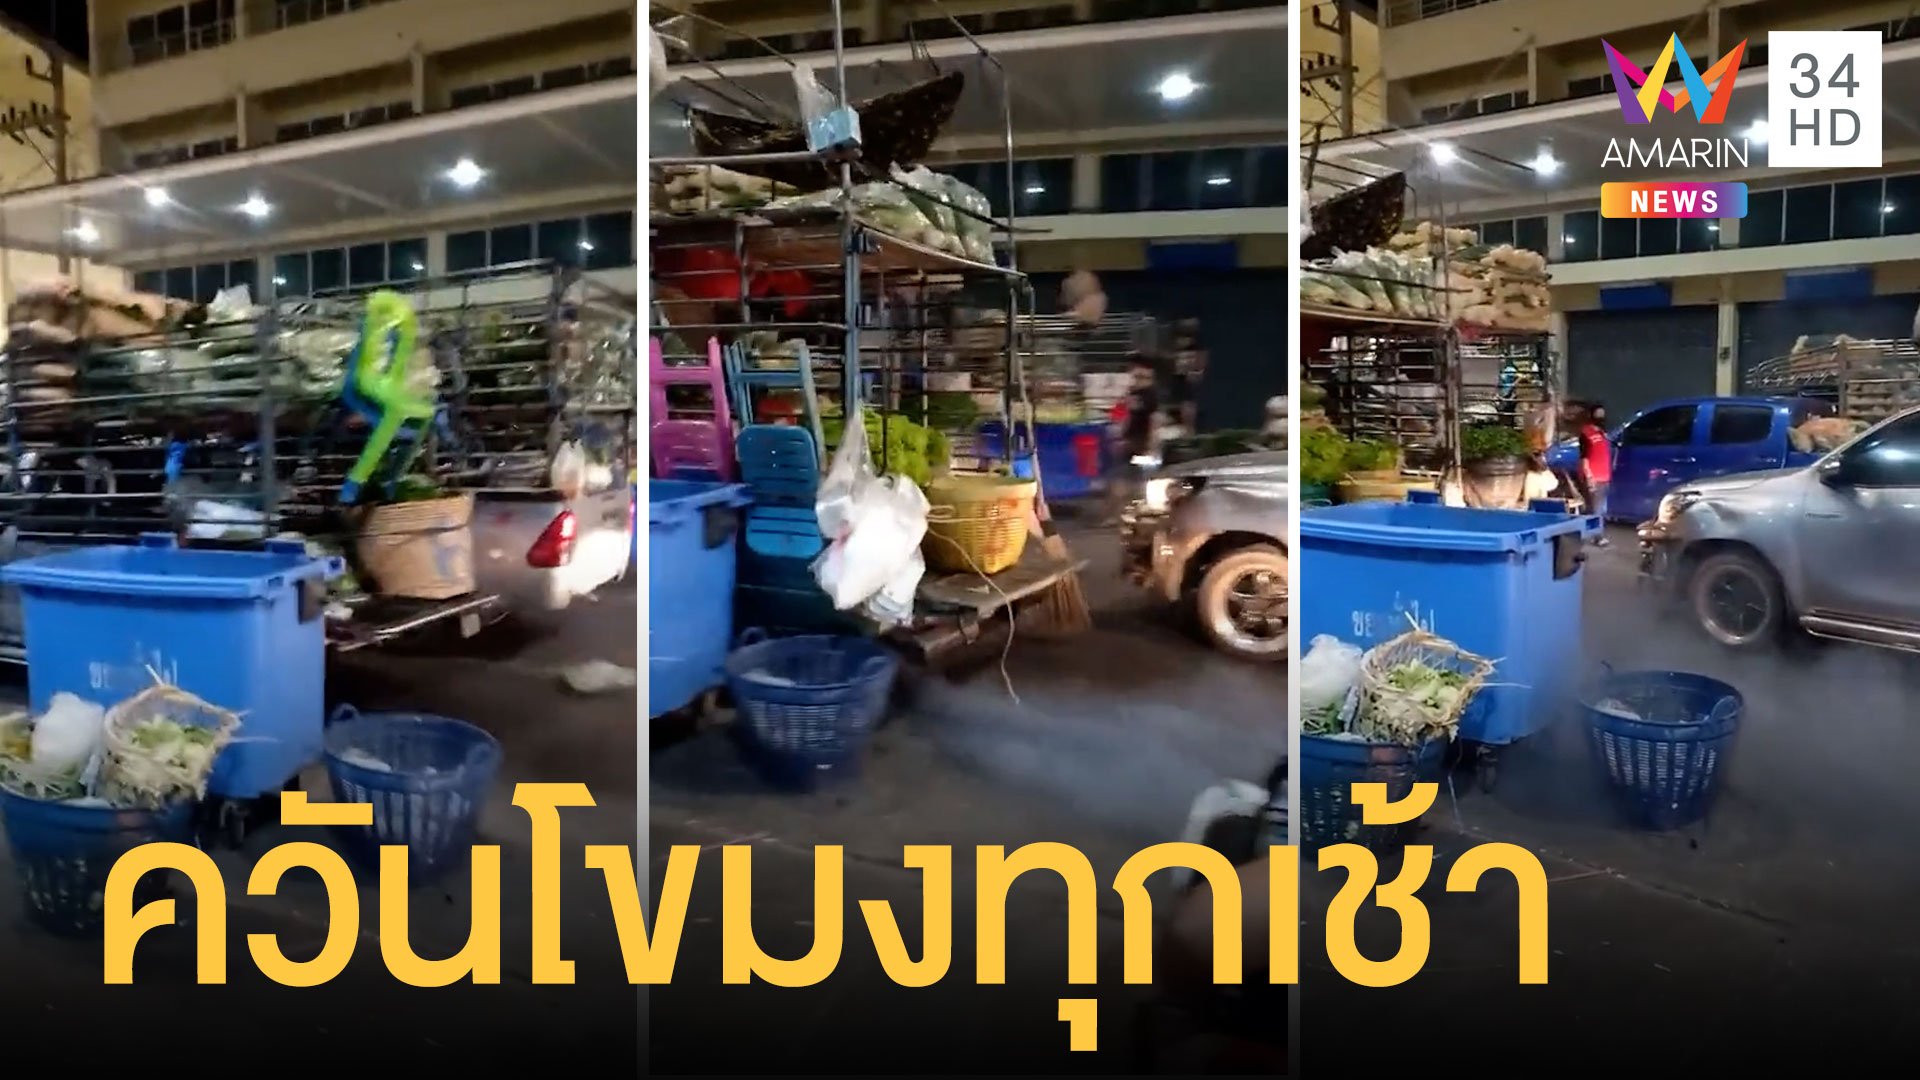 กระบะขนผักตลาดสี่มุมเมือง เบิ้ลรถทักทายกันควันโขมง | ข่าวอรุณอมรินทร์ | 20 ธ.ค. 63 | AMARIN TVHD34